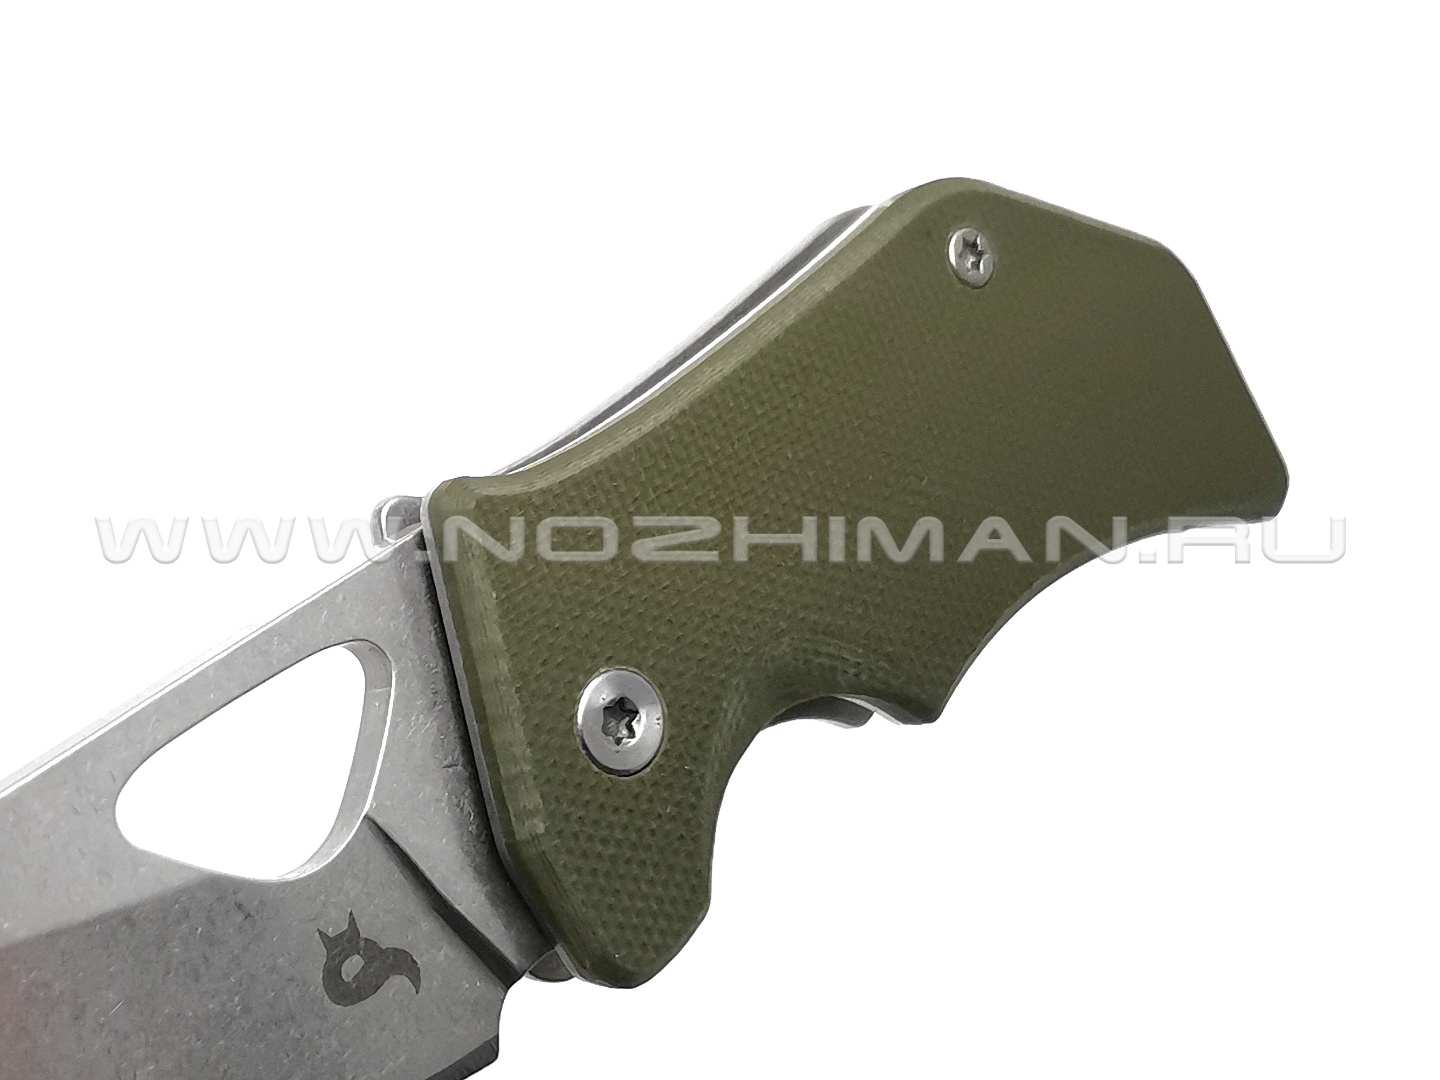 Нож Fox Kit BF-752OD сталь 440C, рукоять G10 OD green